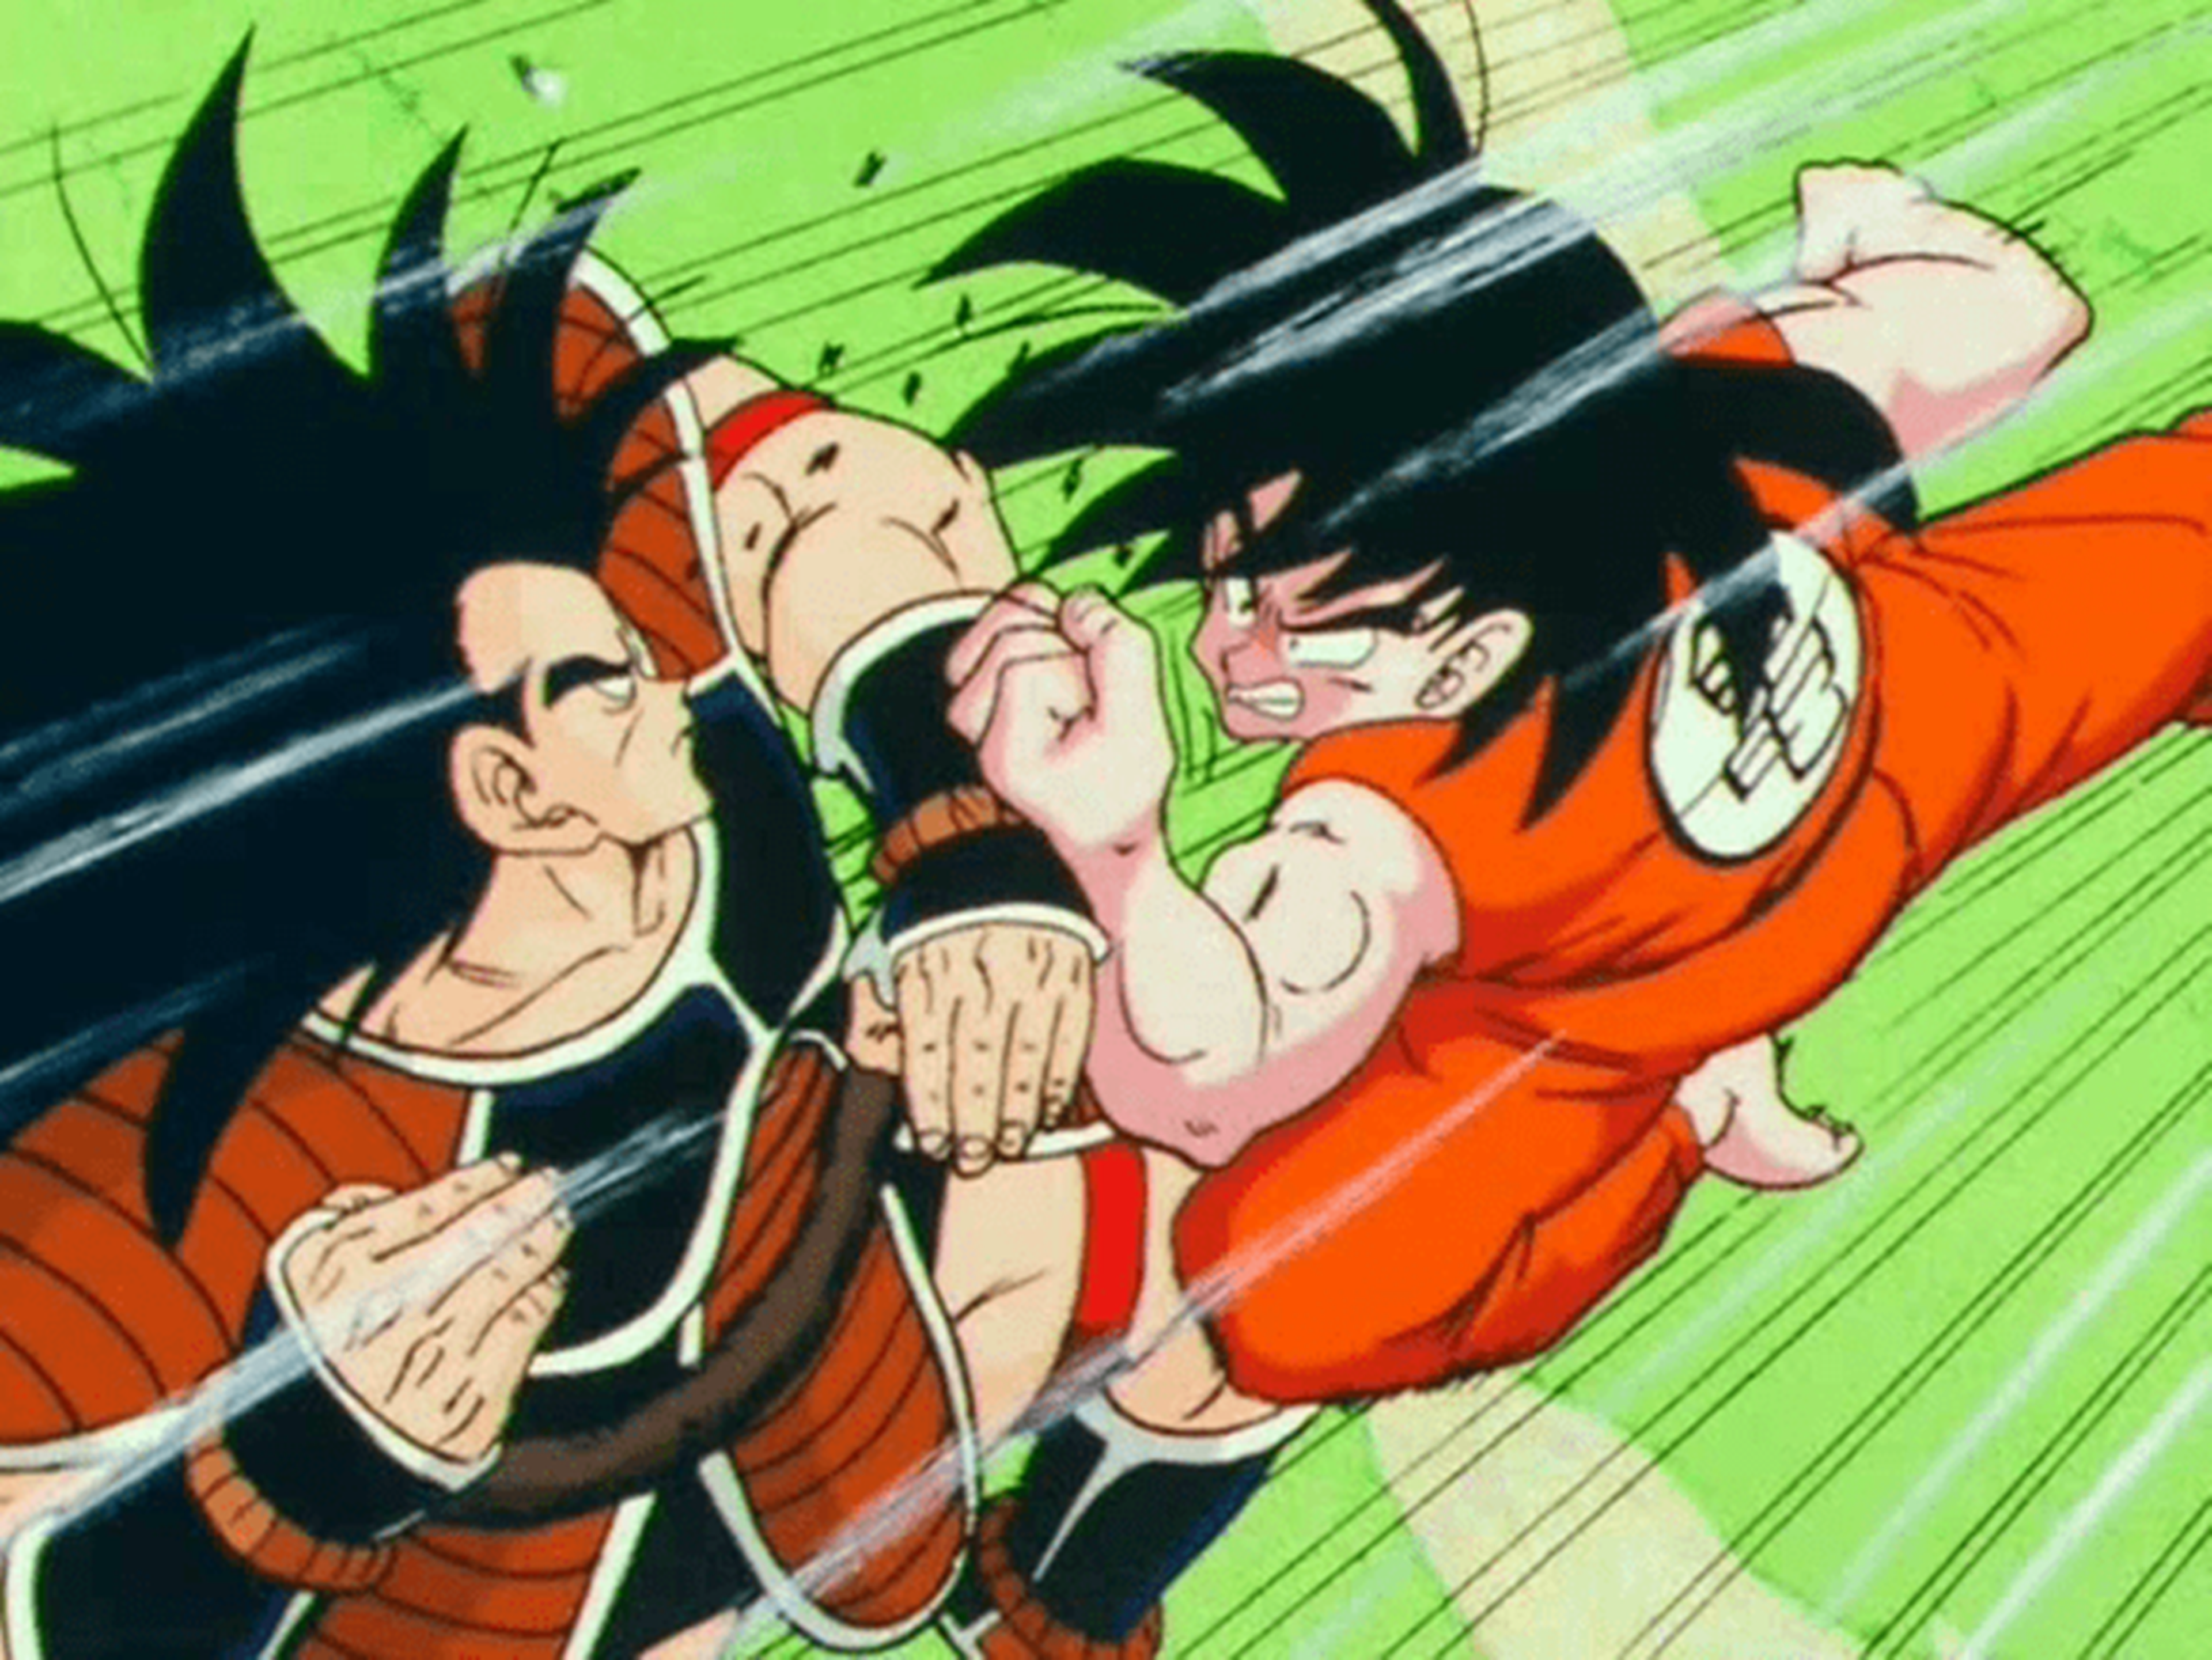 Dragon Ball Z - Raditz vs Goku